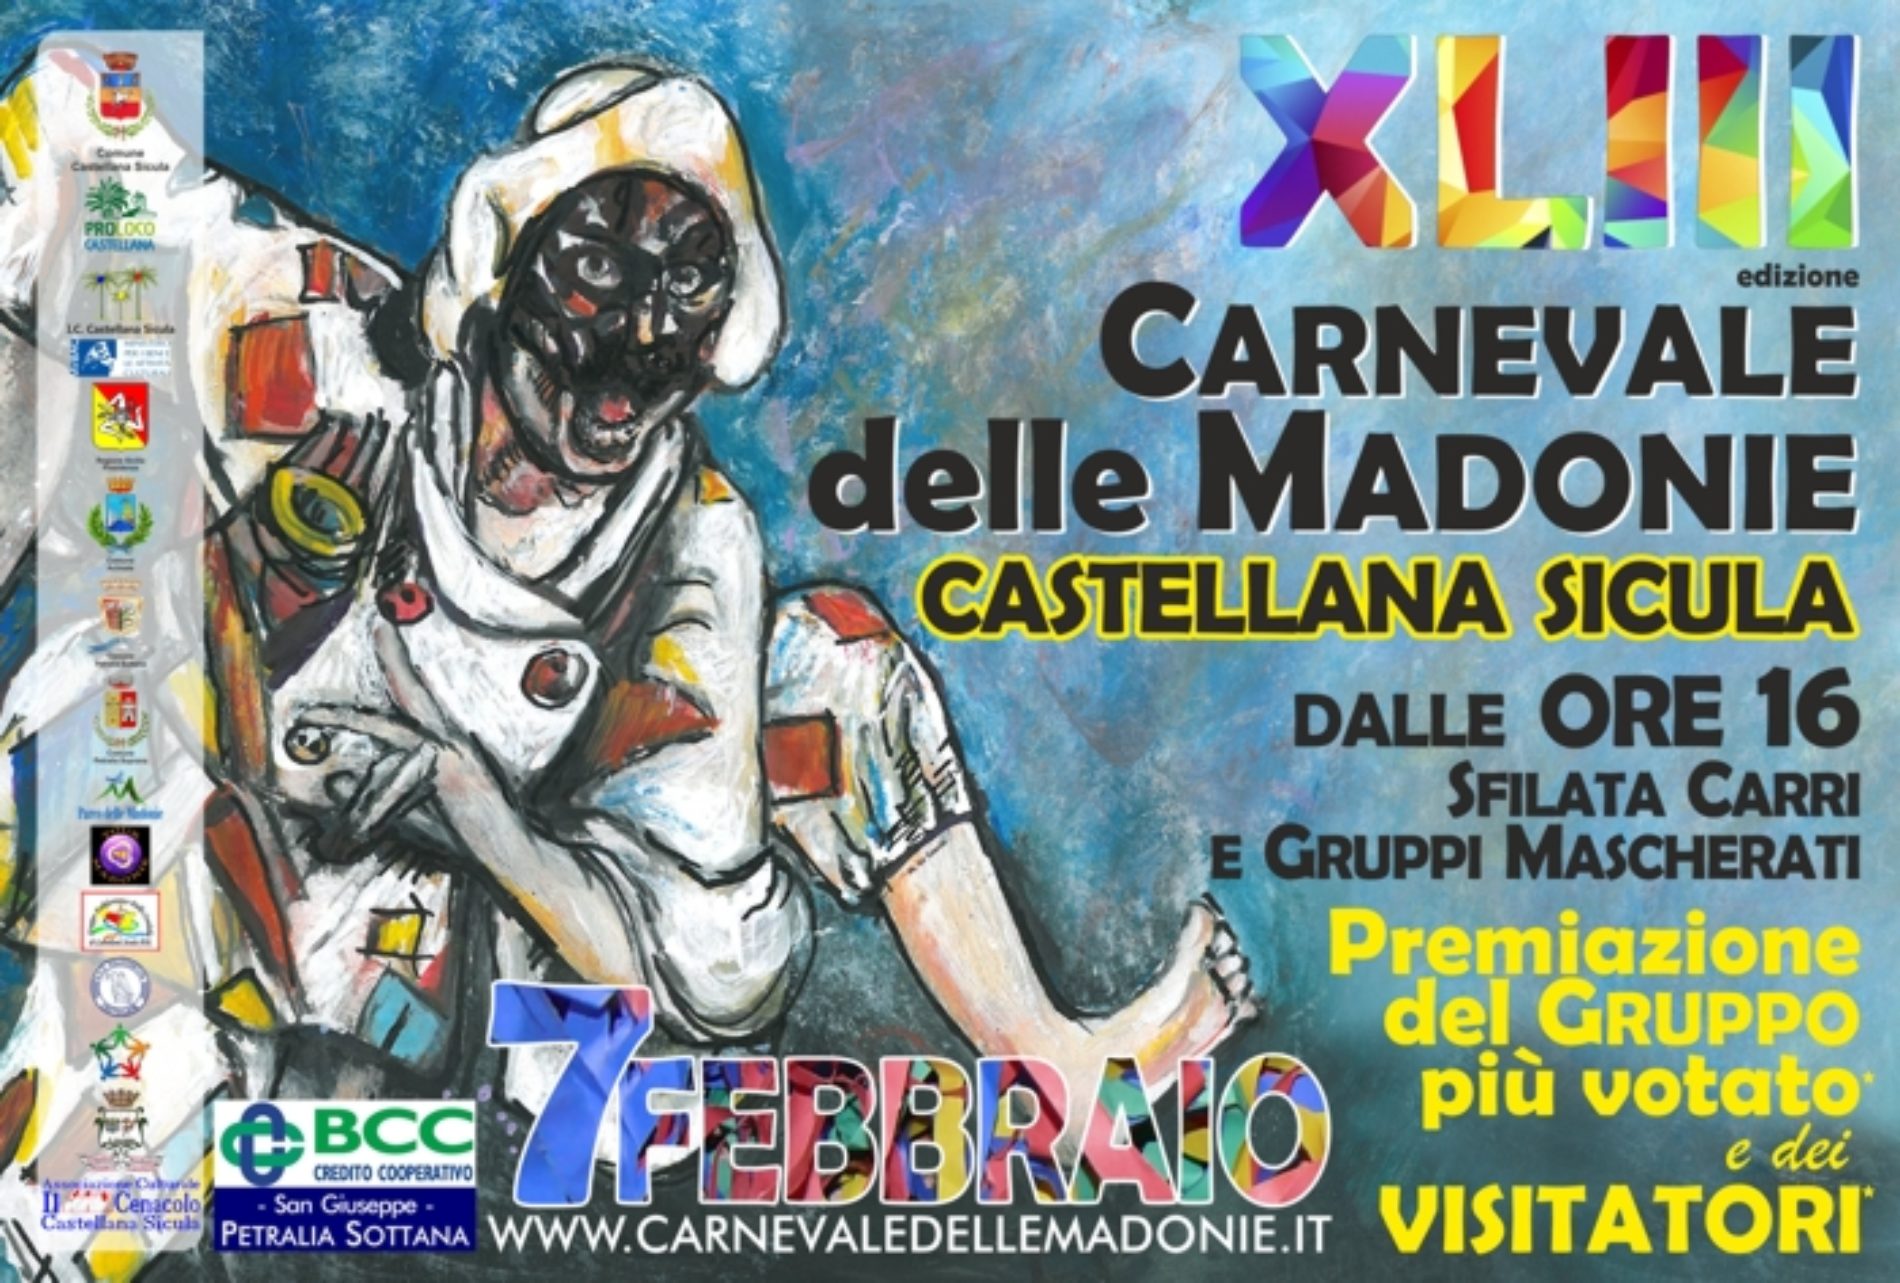 43° edizione del Carnevale delle Madonie. Sfilata di carri e gruppi mascherati, animazione per bambini, balli, musica, gastronomia e sano divertimento a Castellana Sicula.